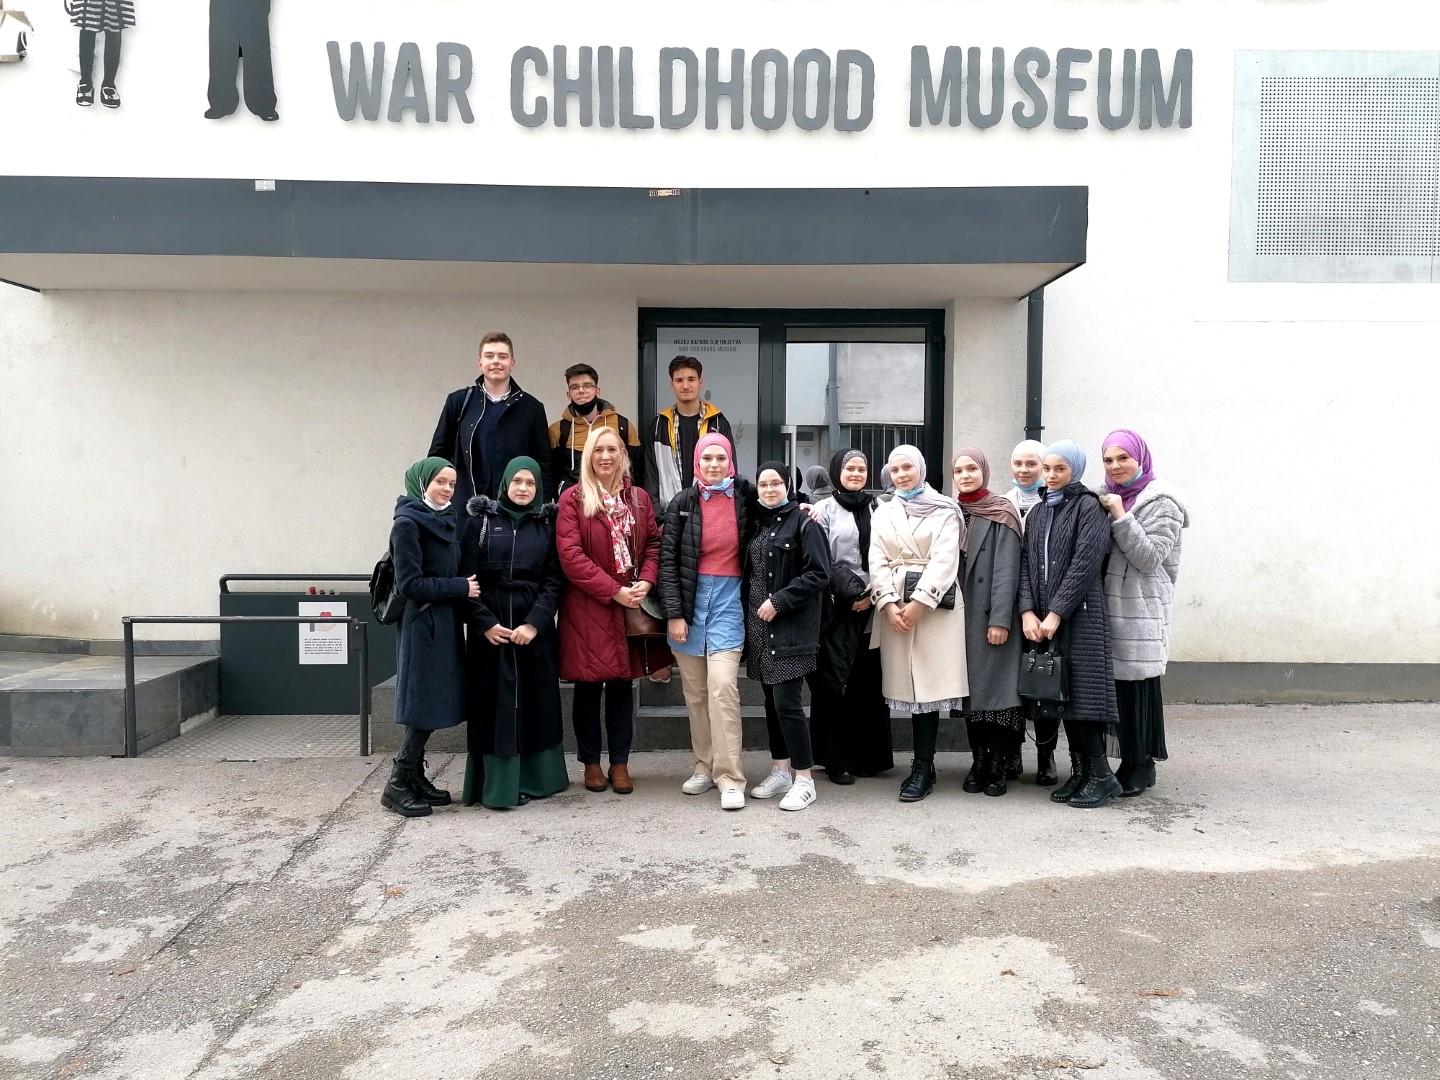 Učenici izborne grupe nastavnih predmeta Historija-Geografija posjetili su Muzej ratnog djetinstva